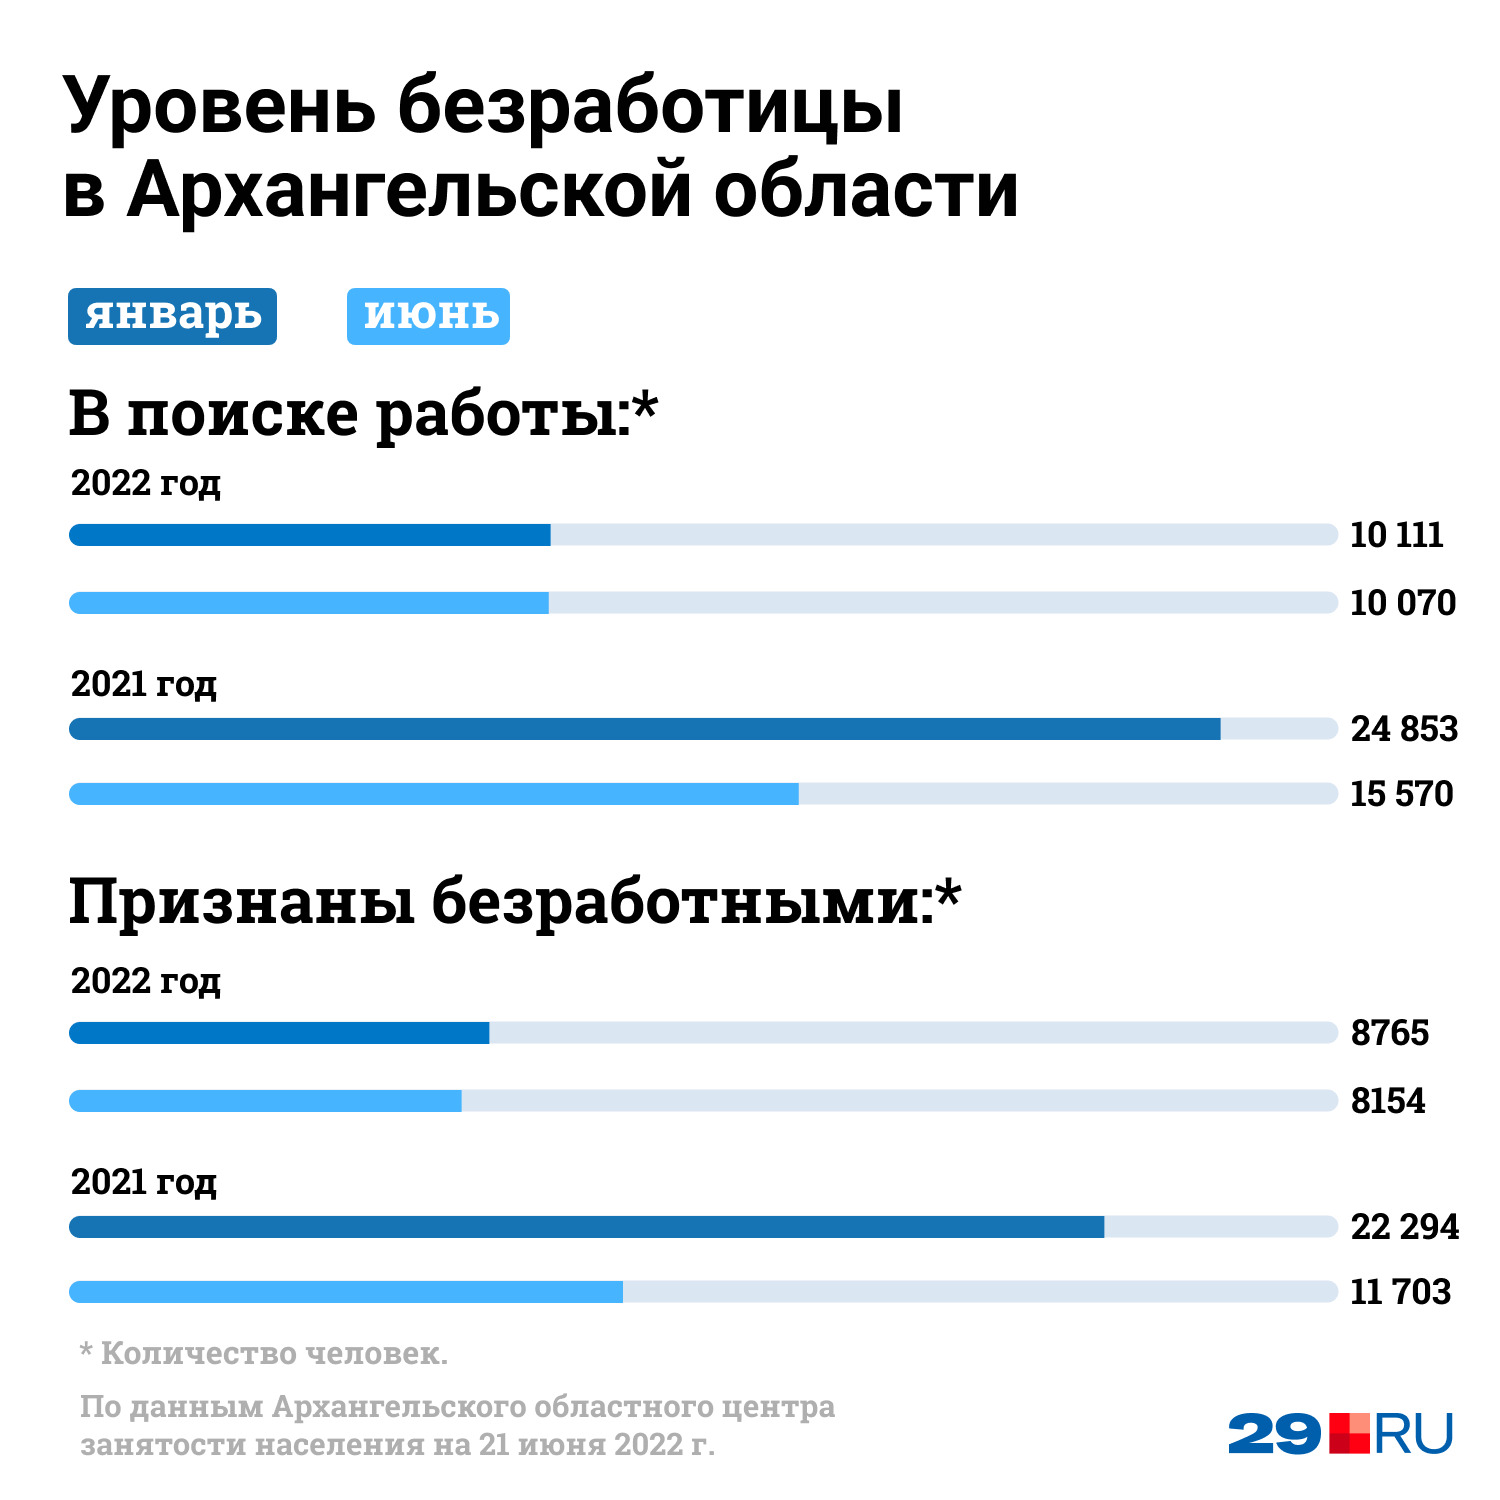 В начале 2021 года в Поморье <a href="https://29.ru/text/job/2021/03/15/69812435/" class="_" target="_blank">отмечался высокий уровень безработицы</a>: таковы были оценки федеральных экспертов